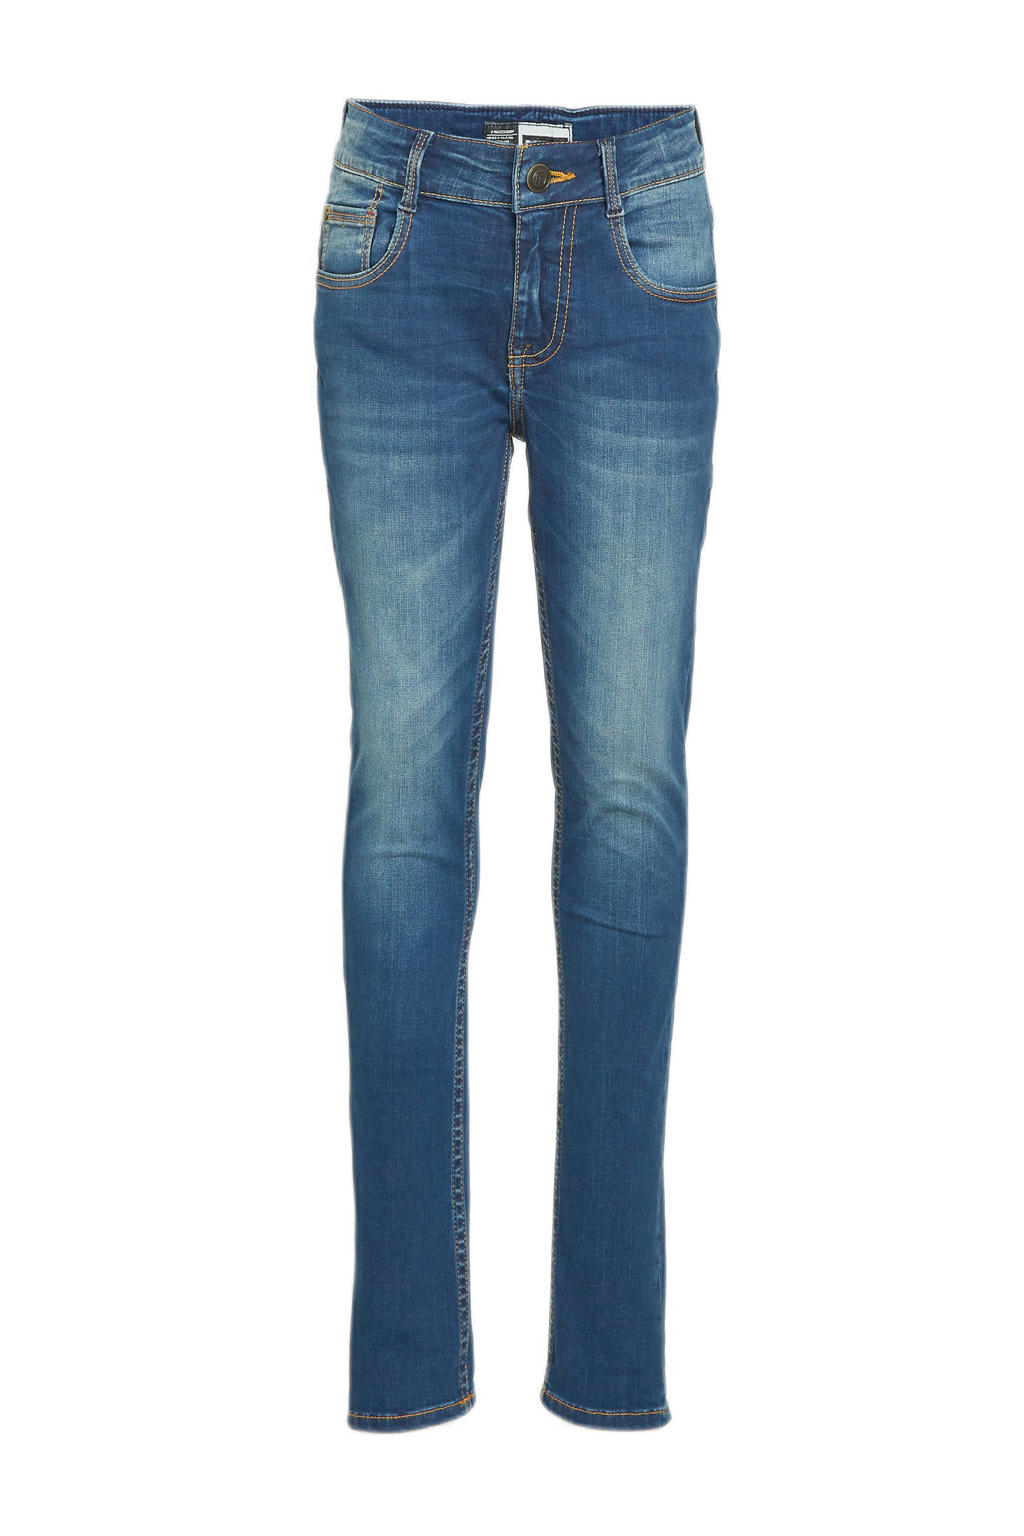 Raizzed skinny jeans Tokyo dark blue tinted